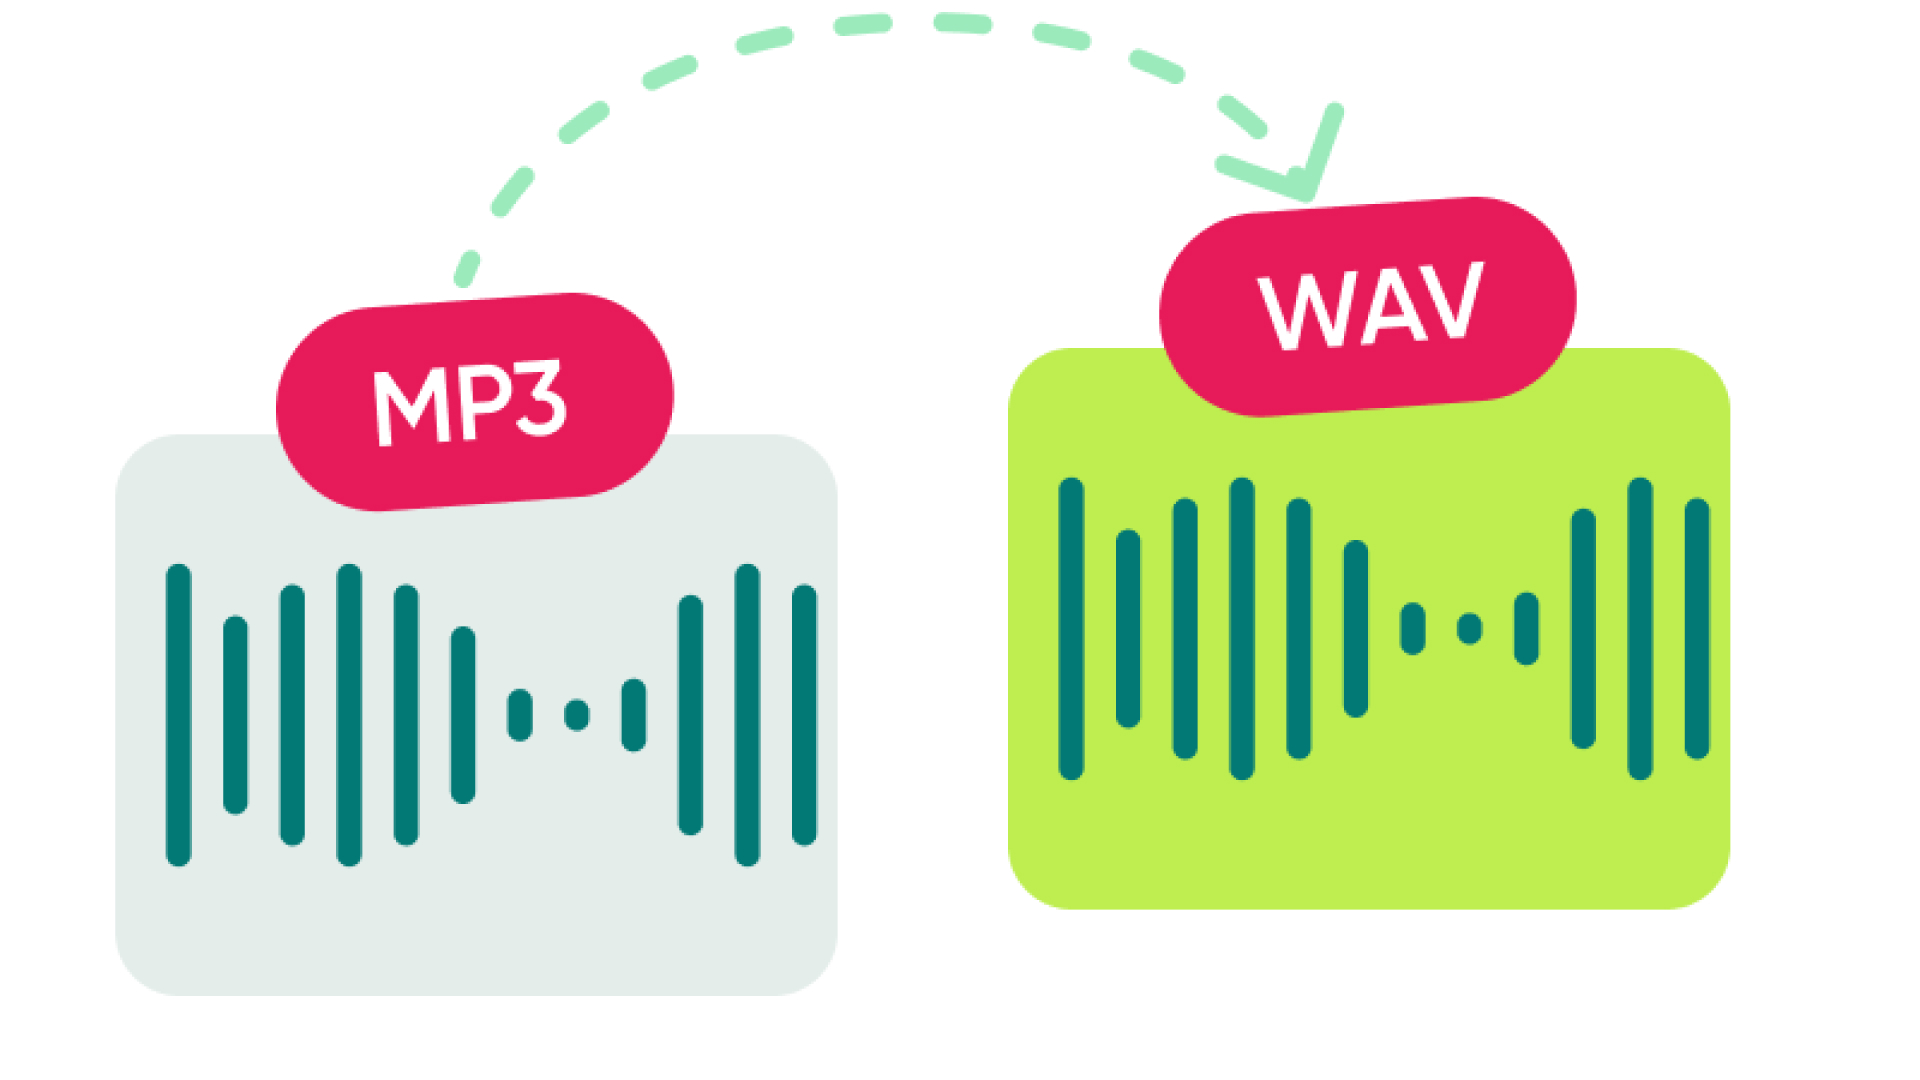 將 MP3 免費轉換為 WAV 的 6 大技巧